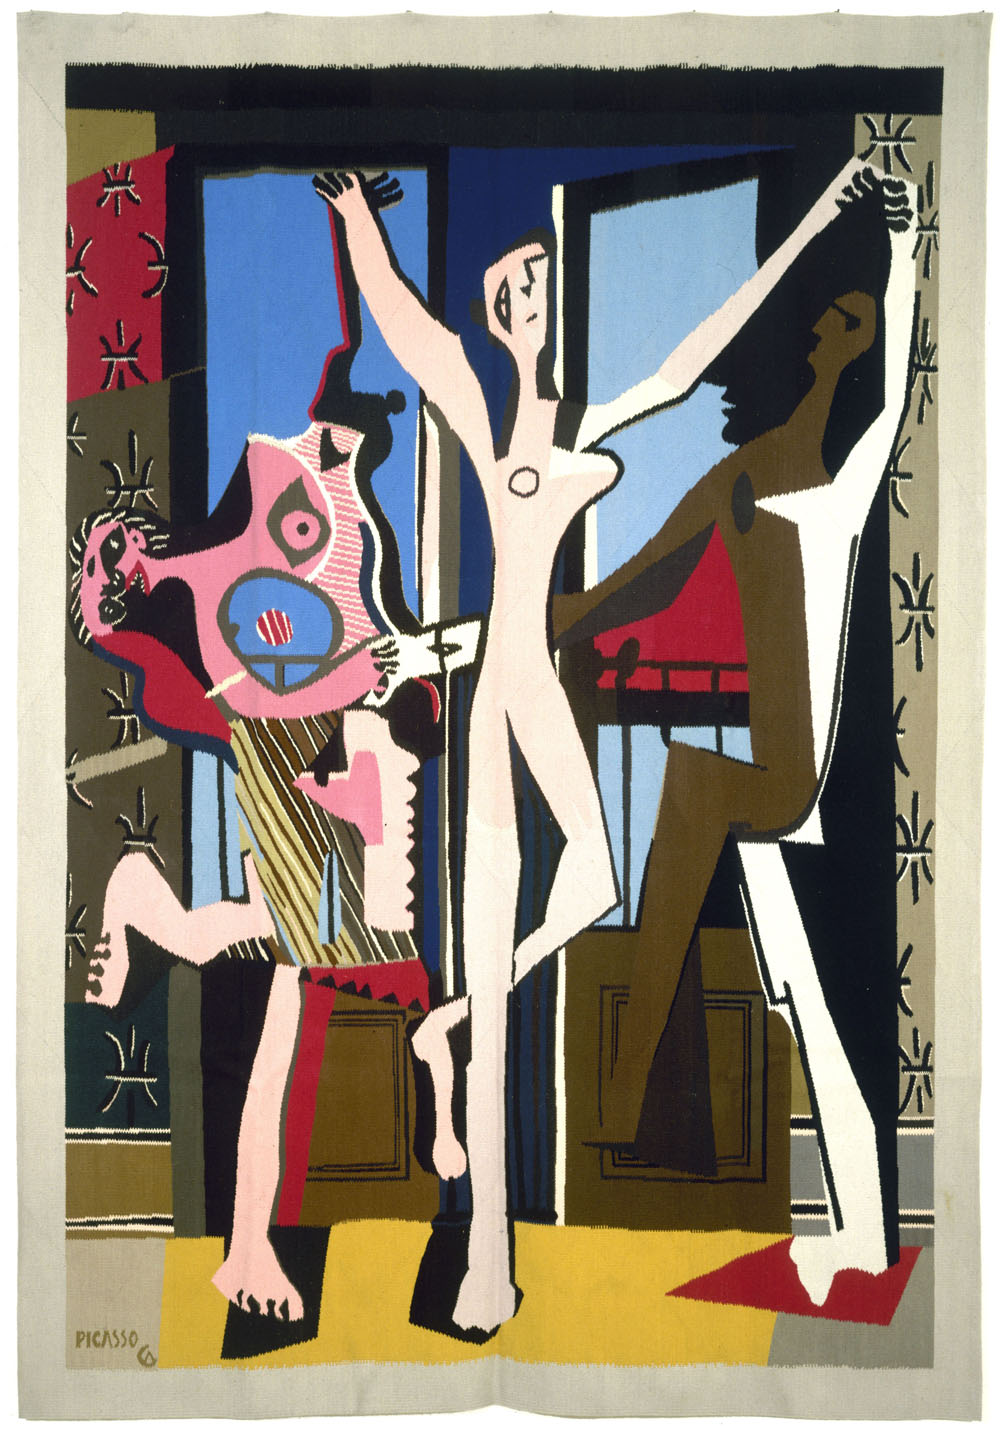 Pablo Picasso (1881-1973). "La Danse", tapisserie, 1925. Paris, musée d'Art moderne.